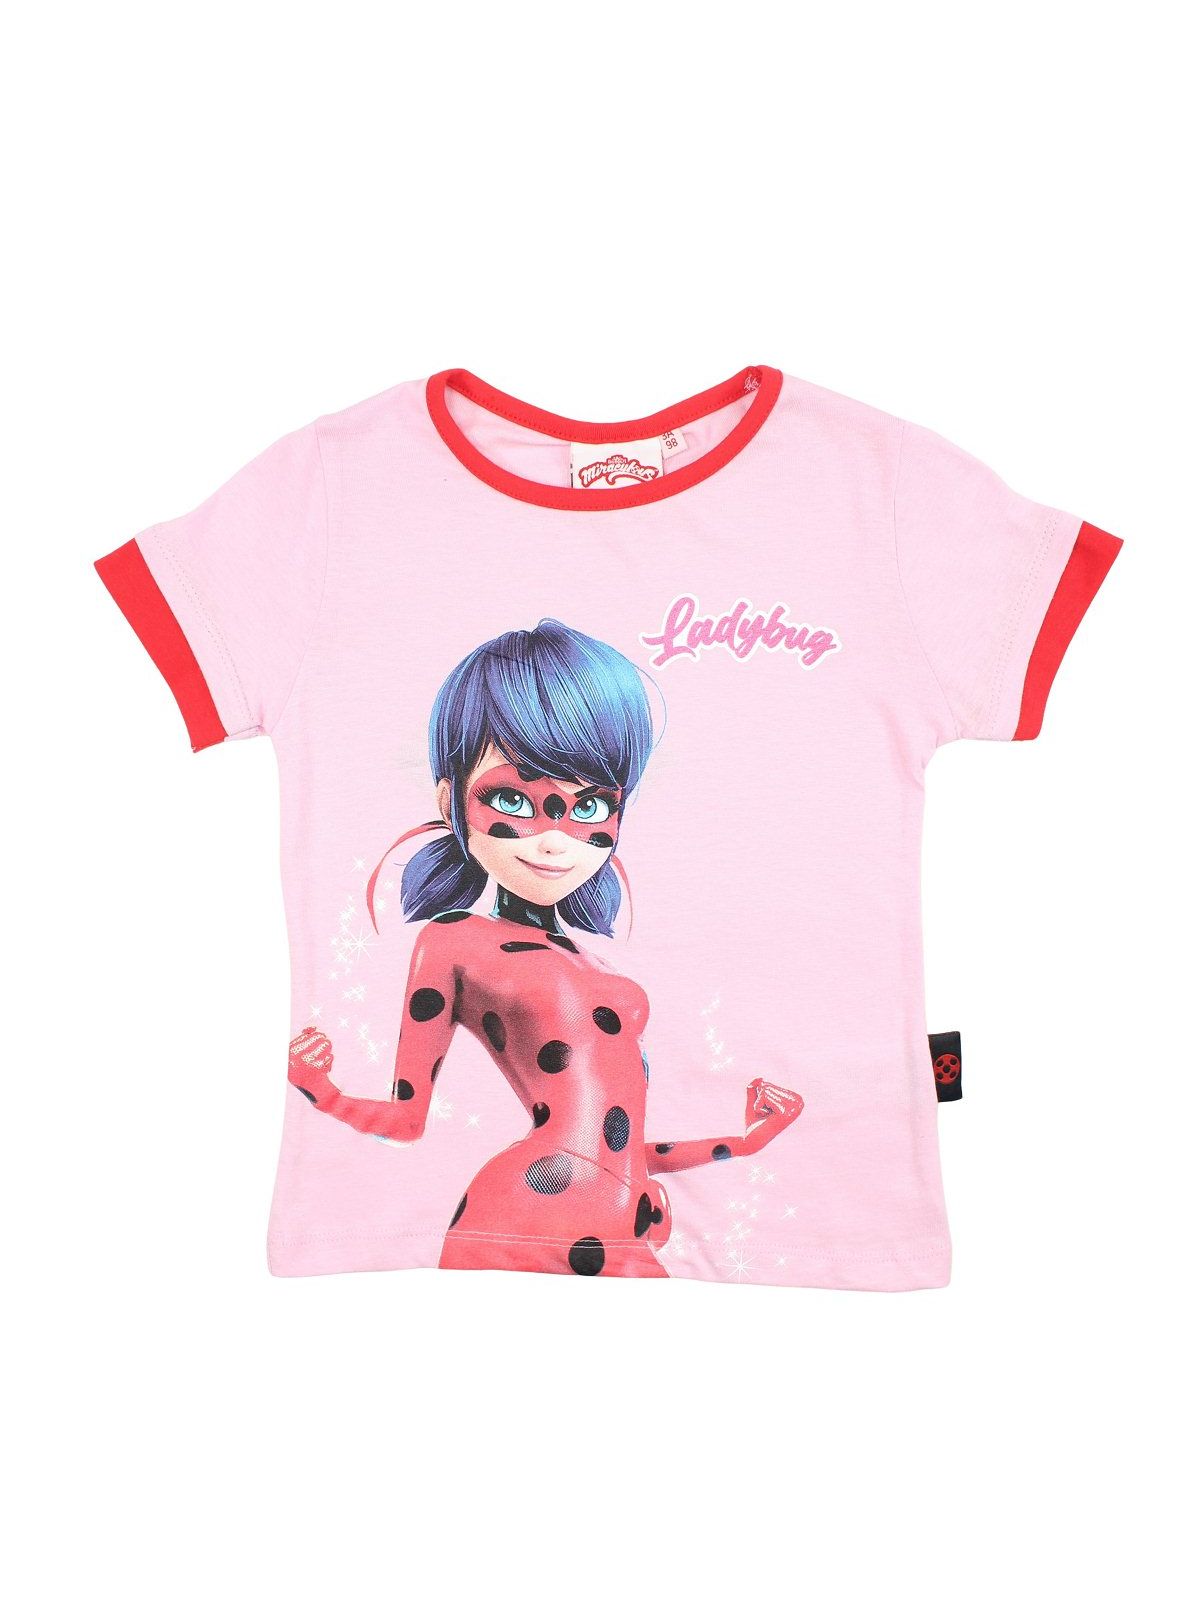 T-shirt Ladybug.